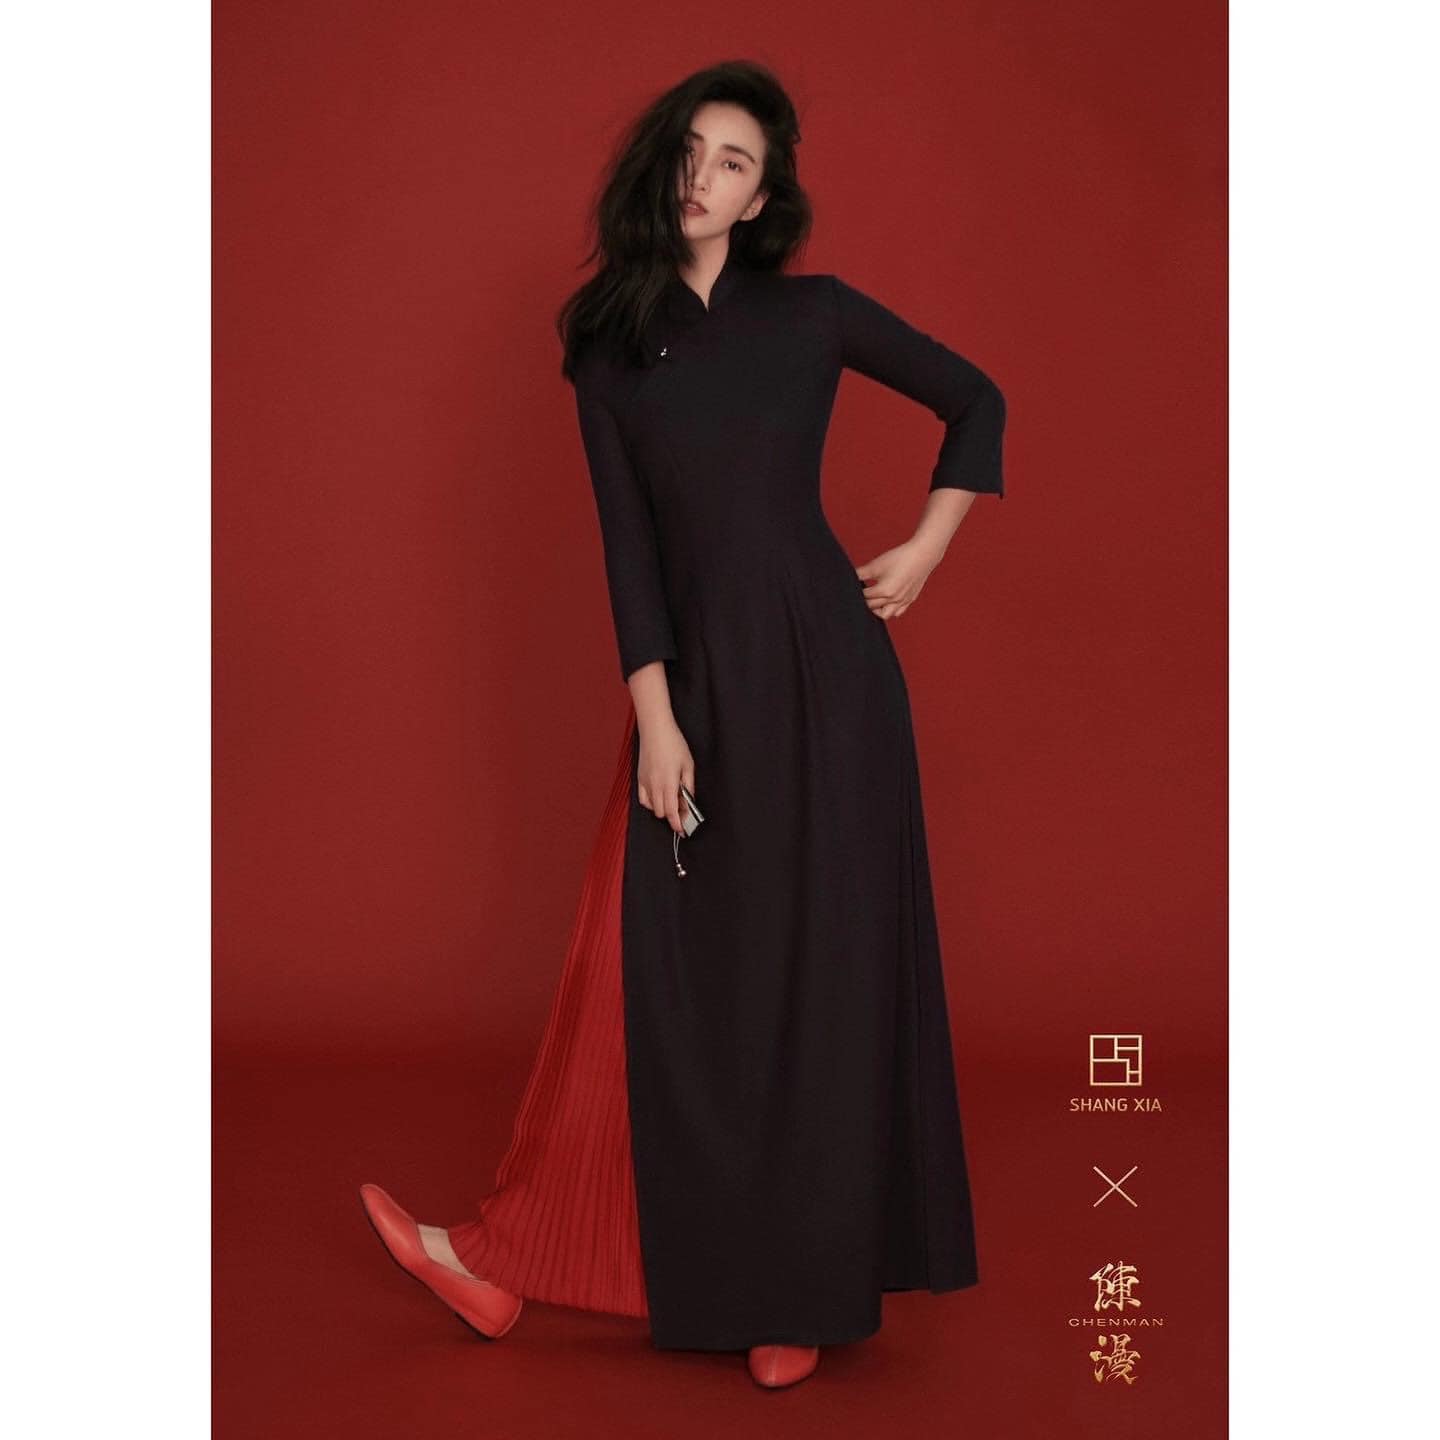 Cộng đồng mạng sững người khi một thiết kế cộp mác Trung Quốc lại y hệt chiếc áo dài của Việt Nam